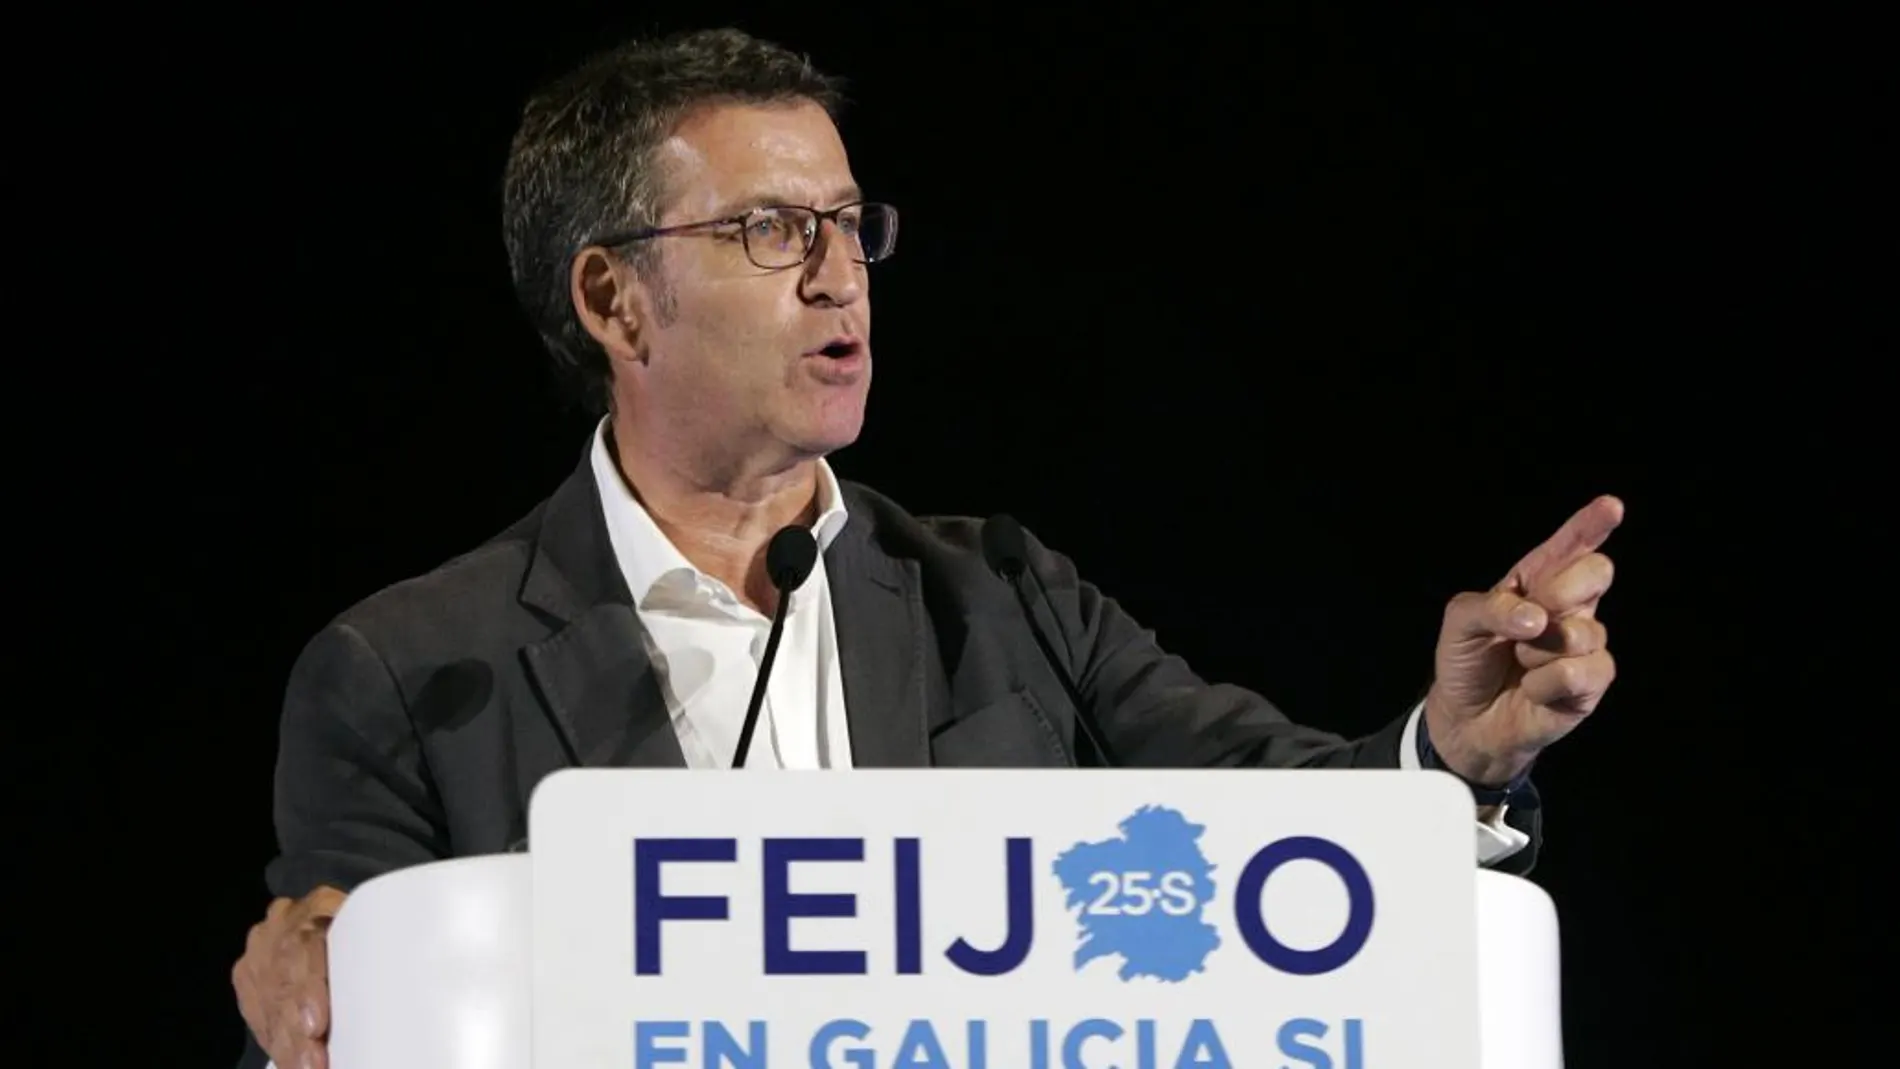 El candidato del PPdeG a la presidencia de la Xunta, Alberto Núñez Feijóo, durante su intervención en un mitin del partido celebrado en La Coruña